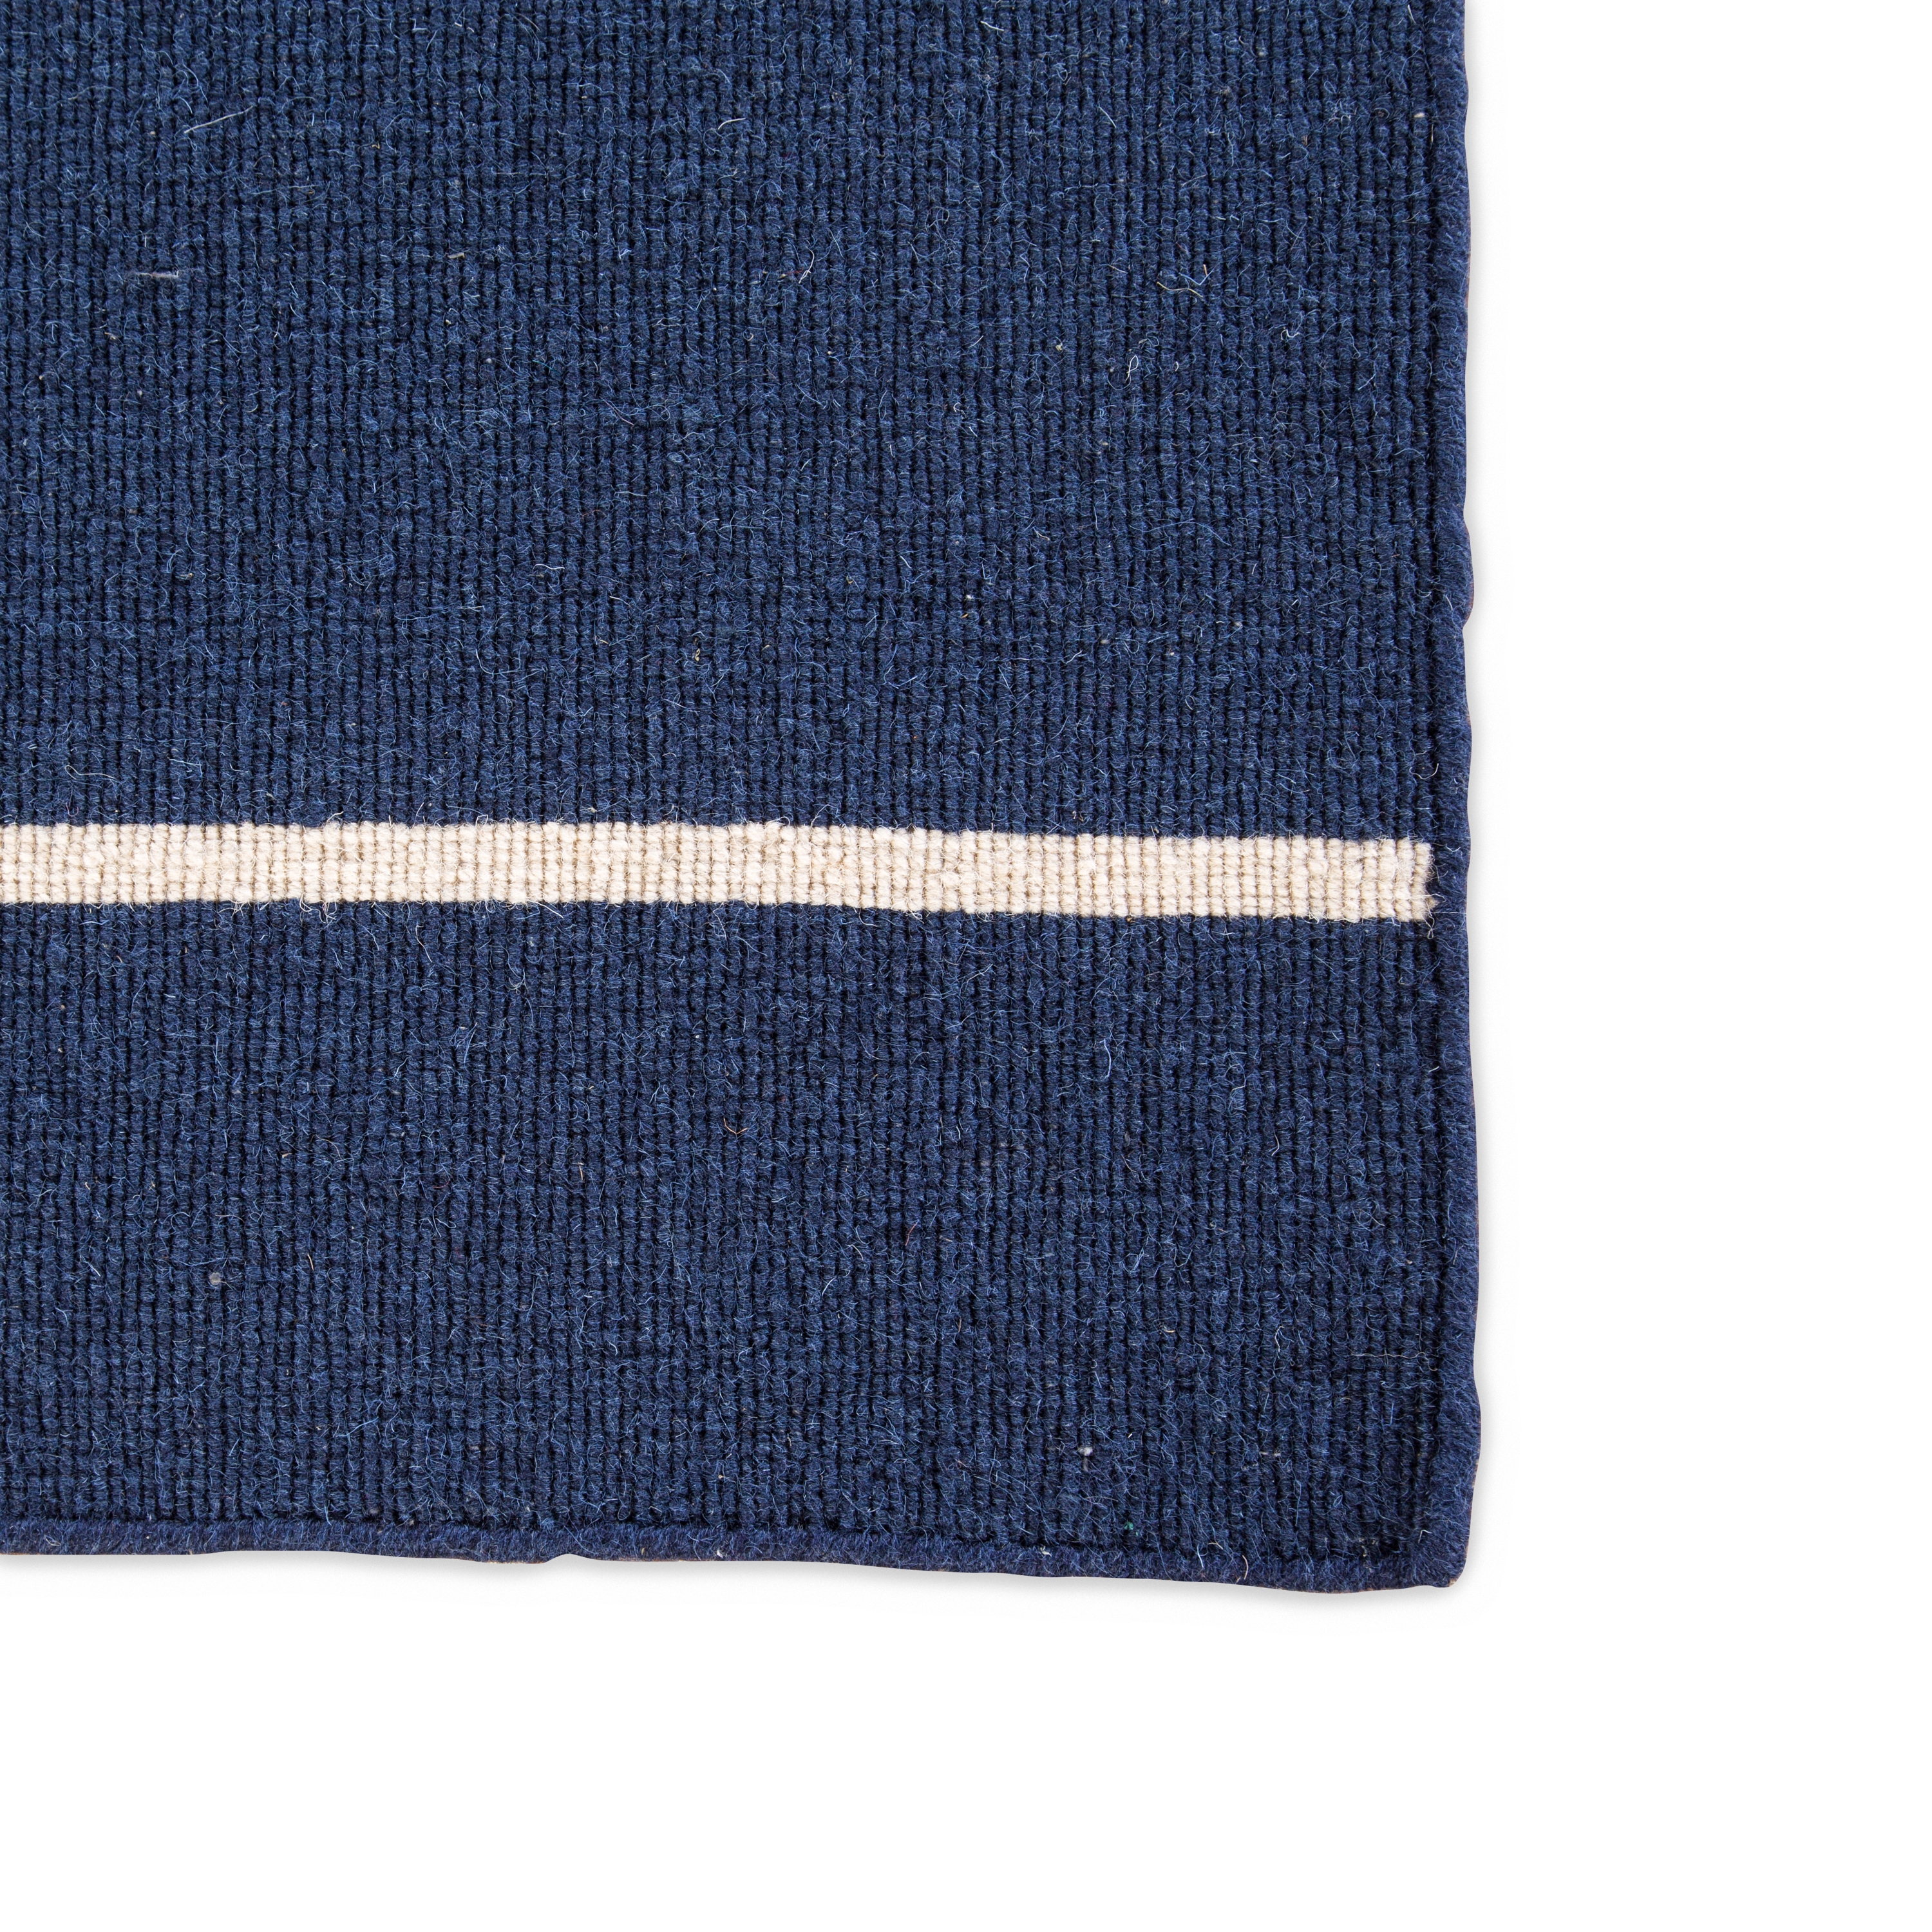 Cape Cod Handmade Stripe Blue/ White Runner Rug (2'6" X 8') - Image 3